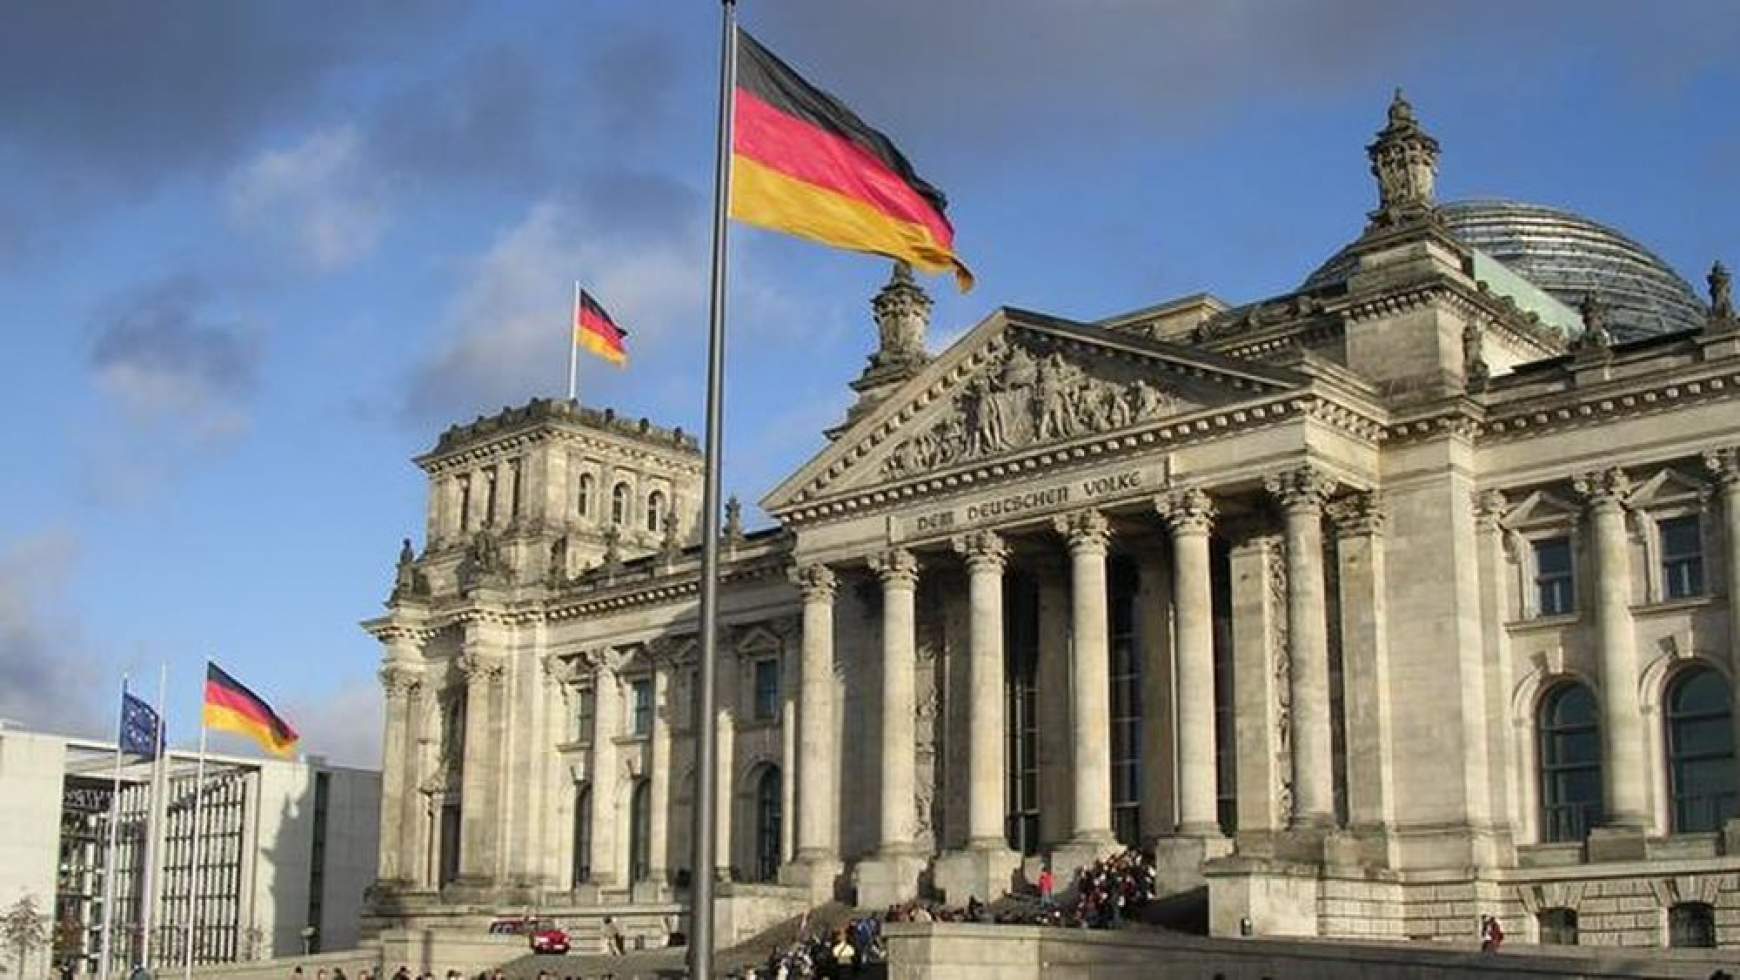 201709251429310.Bundestag-Reichstags2.jpg